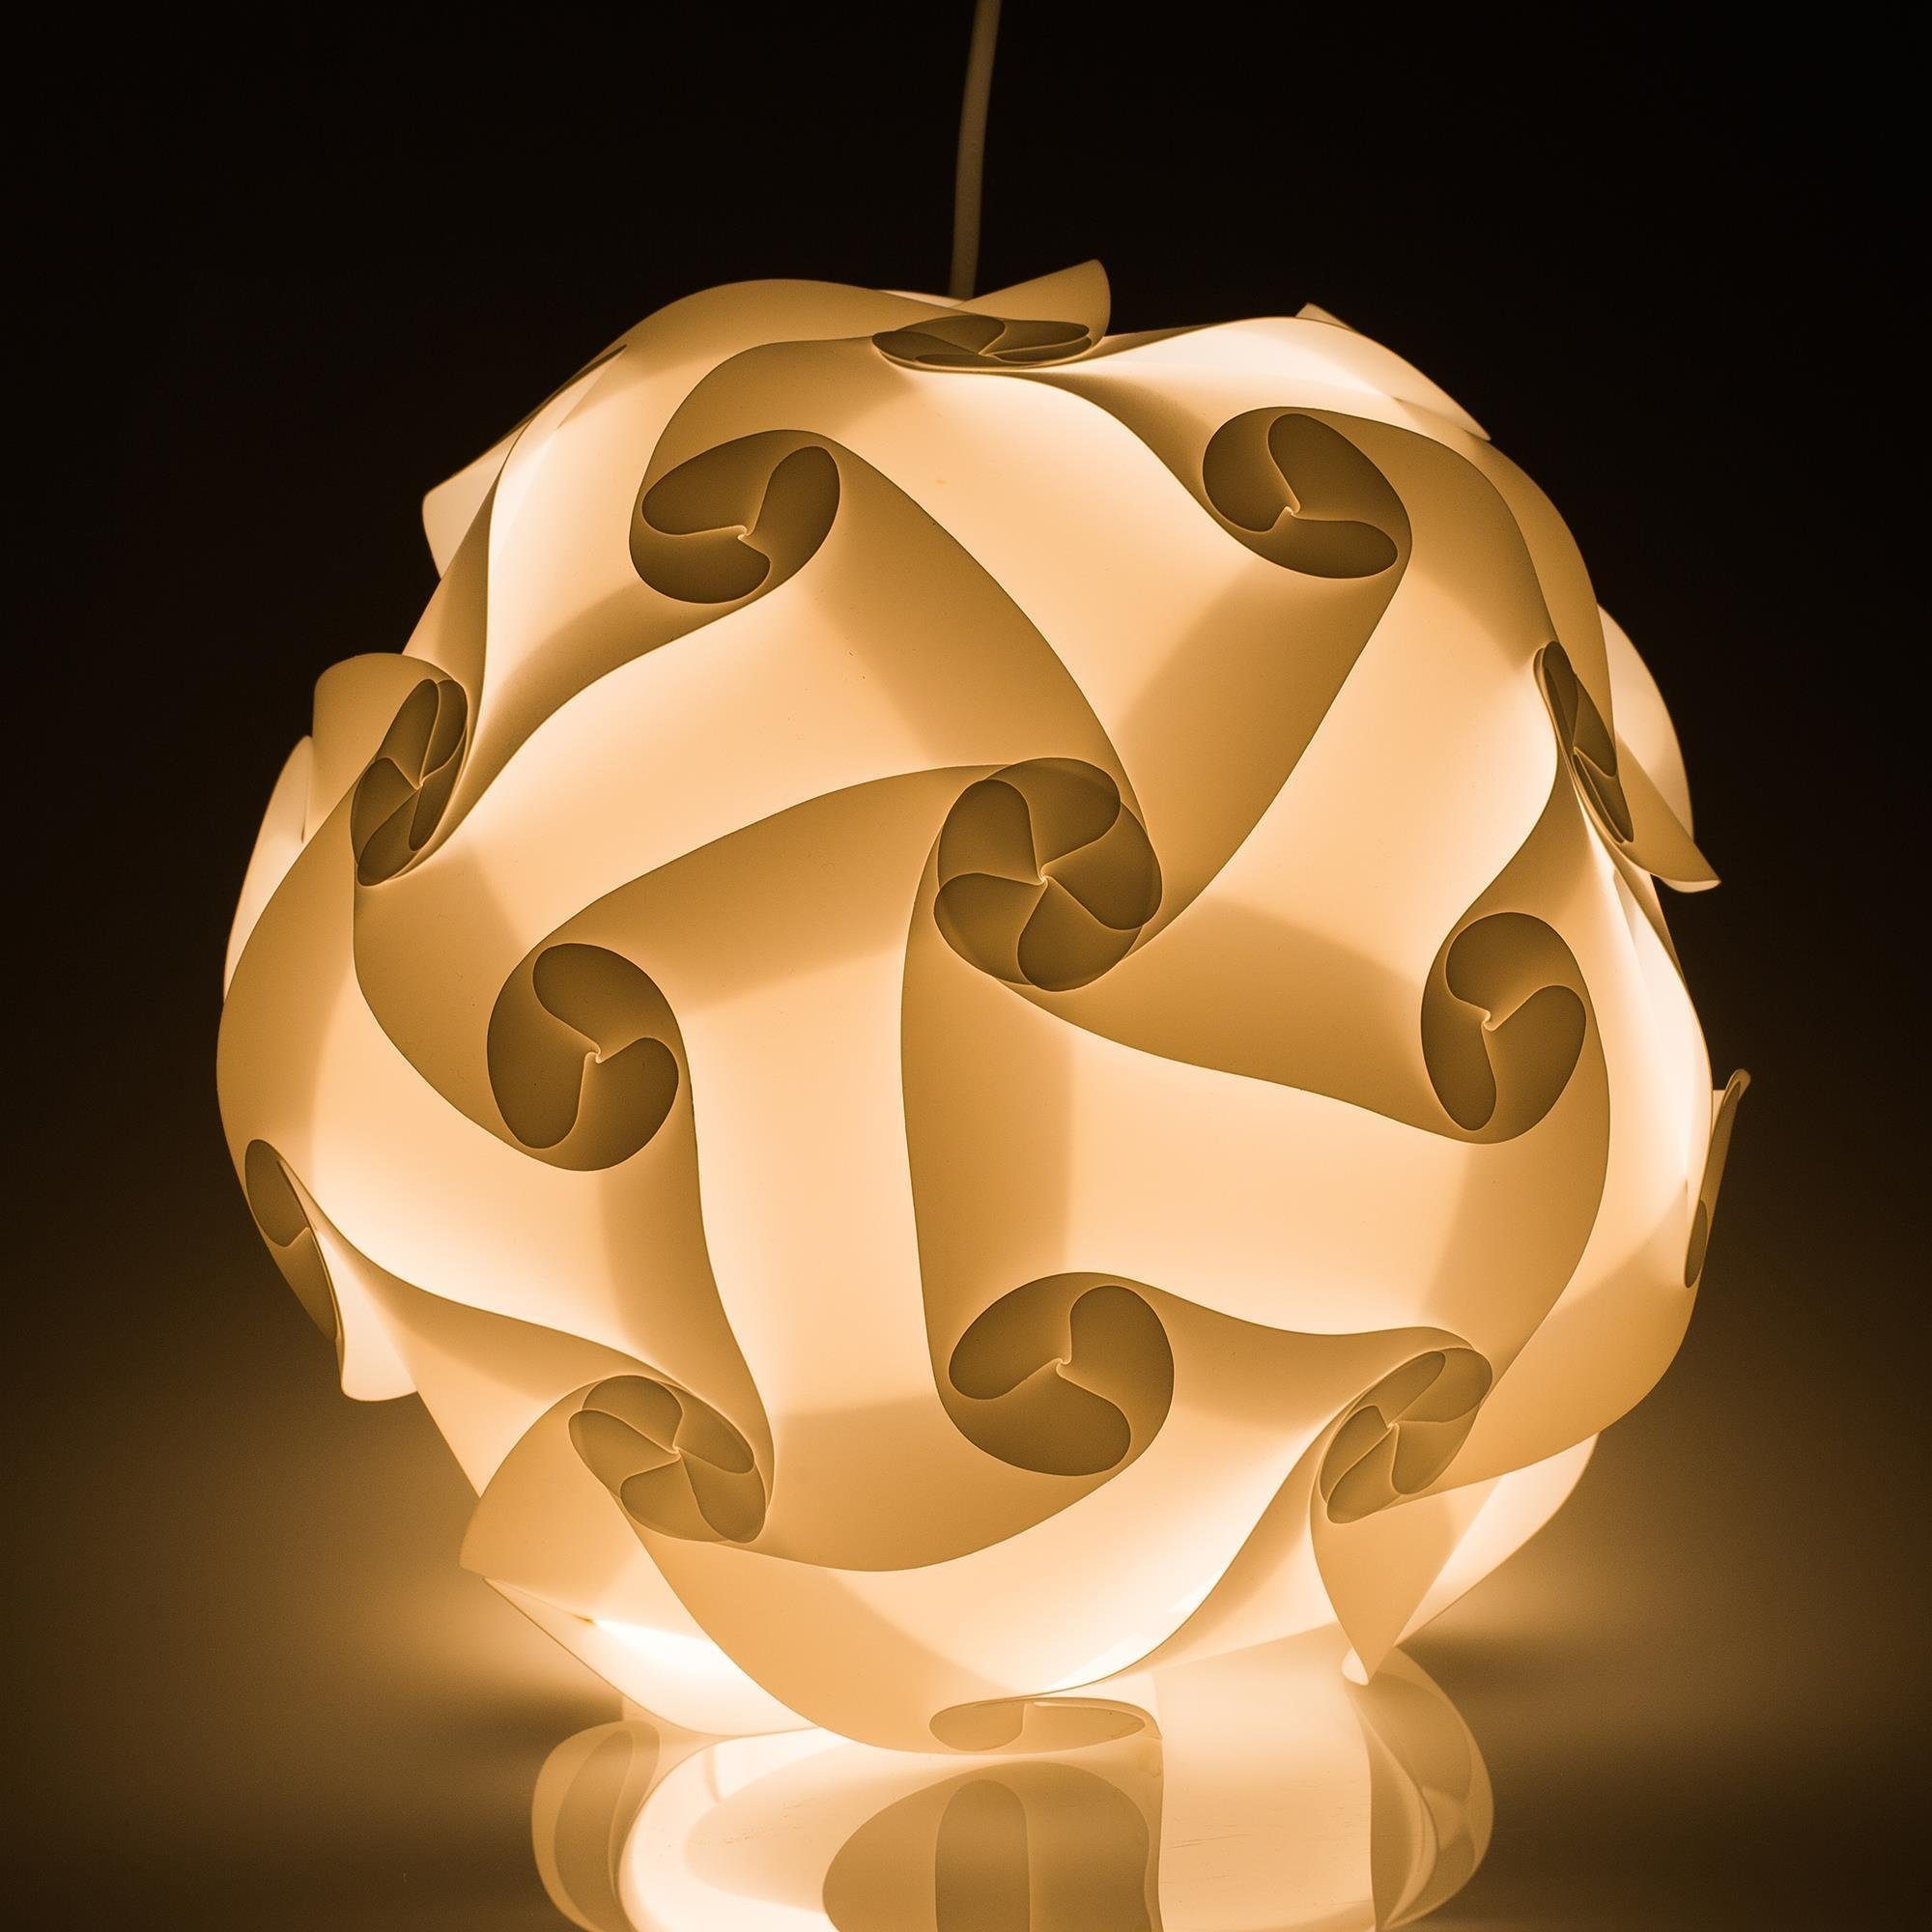 CASE XL Lampe cm Puzzle DIY Puzzle Lampenschirme, DIY Lampenschirm 15 42 Designs Schirm Lampenschirm Stehlampe EAZY DIY